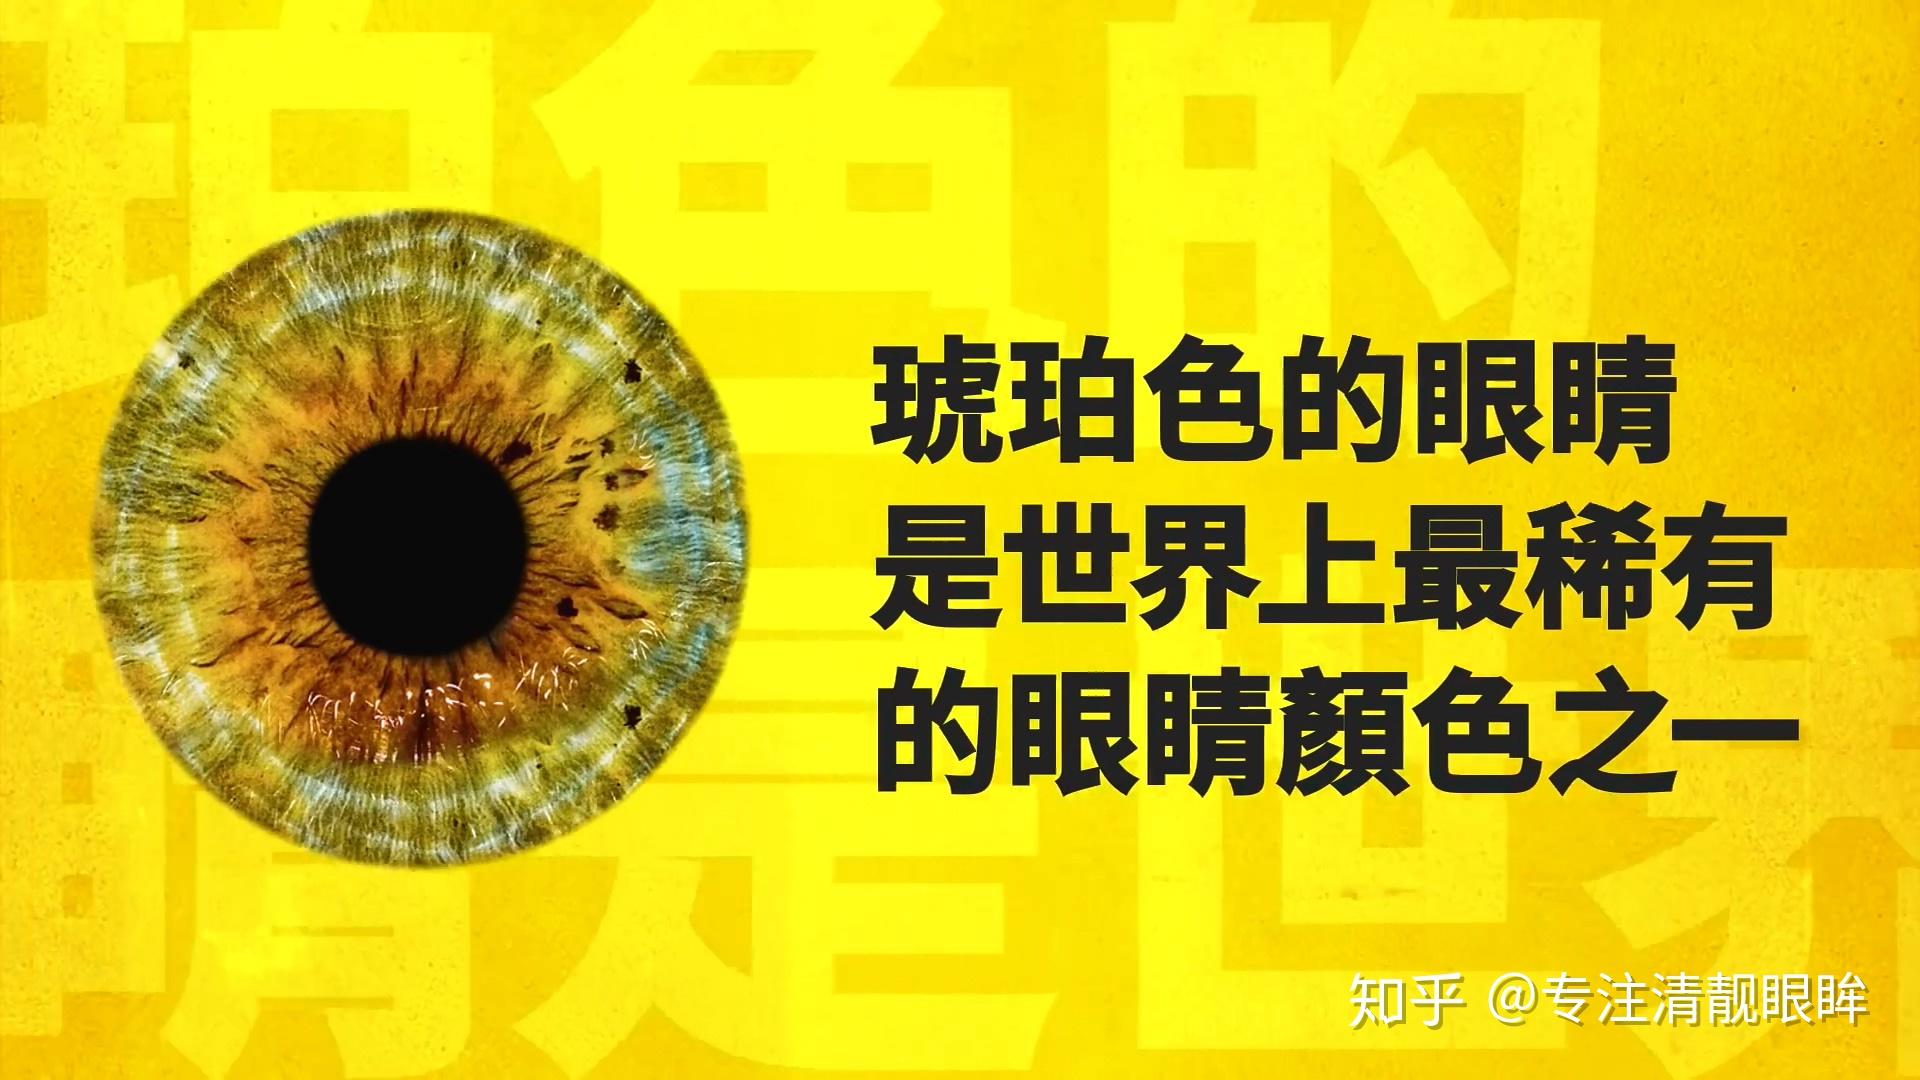 琥铂色眼睛仅存在于占全世界不到5%的人口中,它们多集中在南美洲和